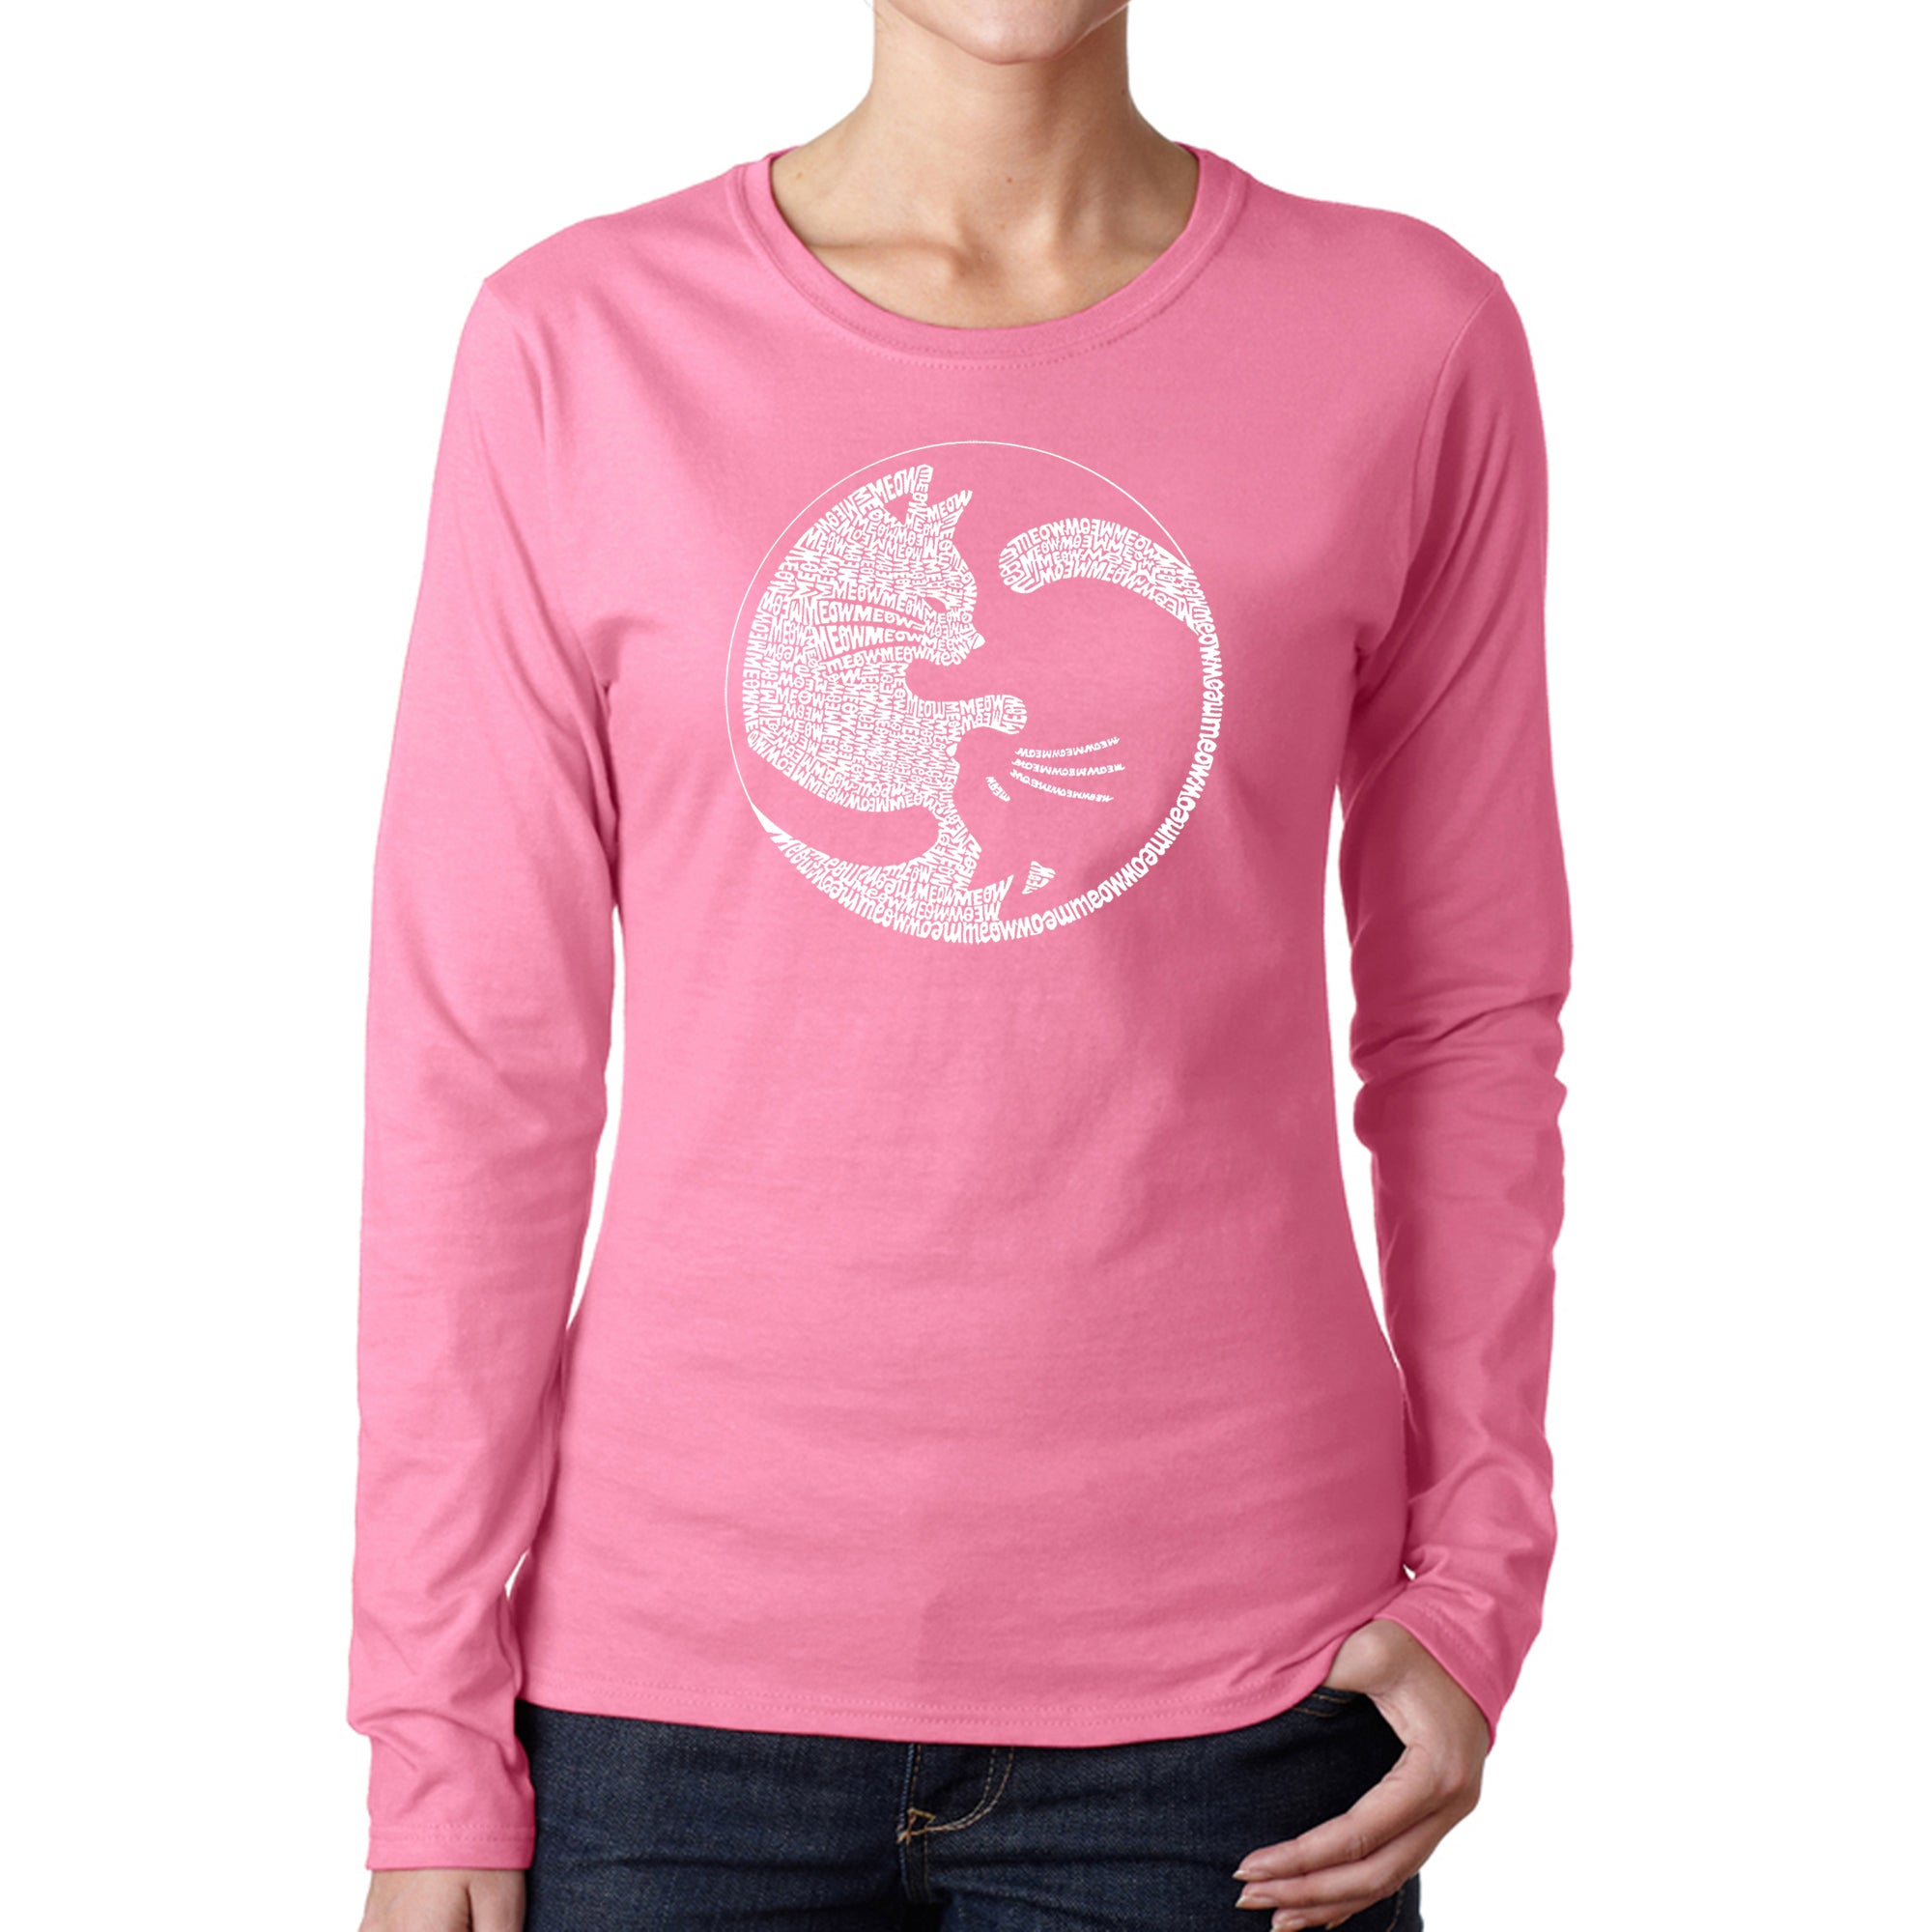 Yin Yang Cat - Women's Word Art Long Sleeve T-Shirt - Pink - XX-Large